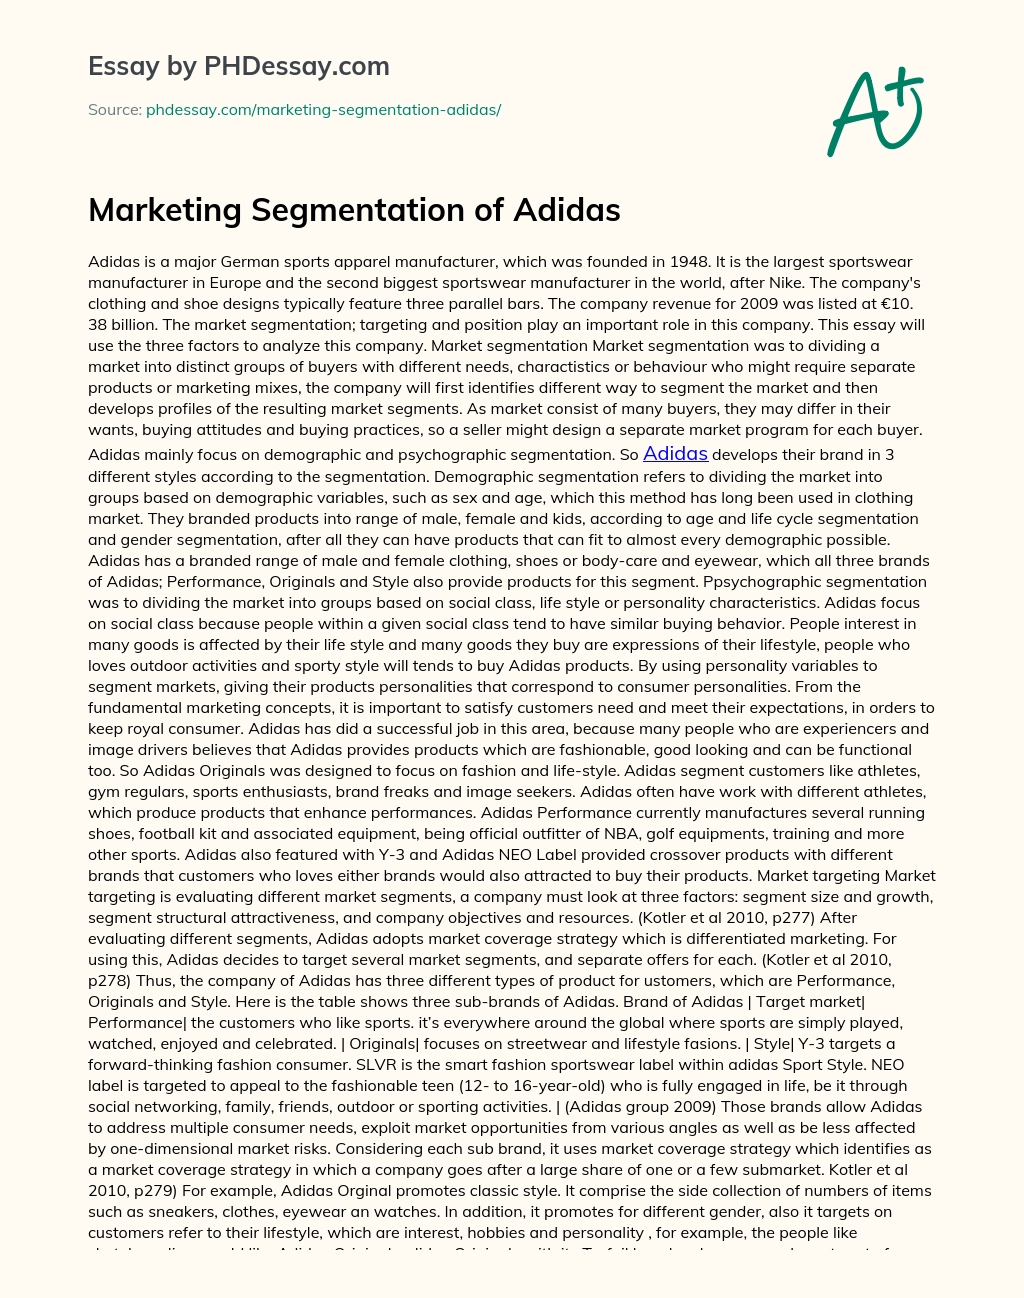 Marketing Segmentation of Adidas essay